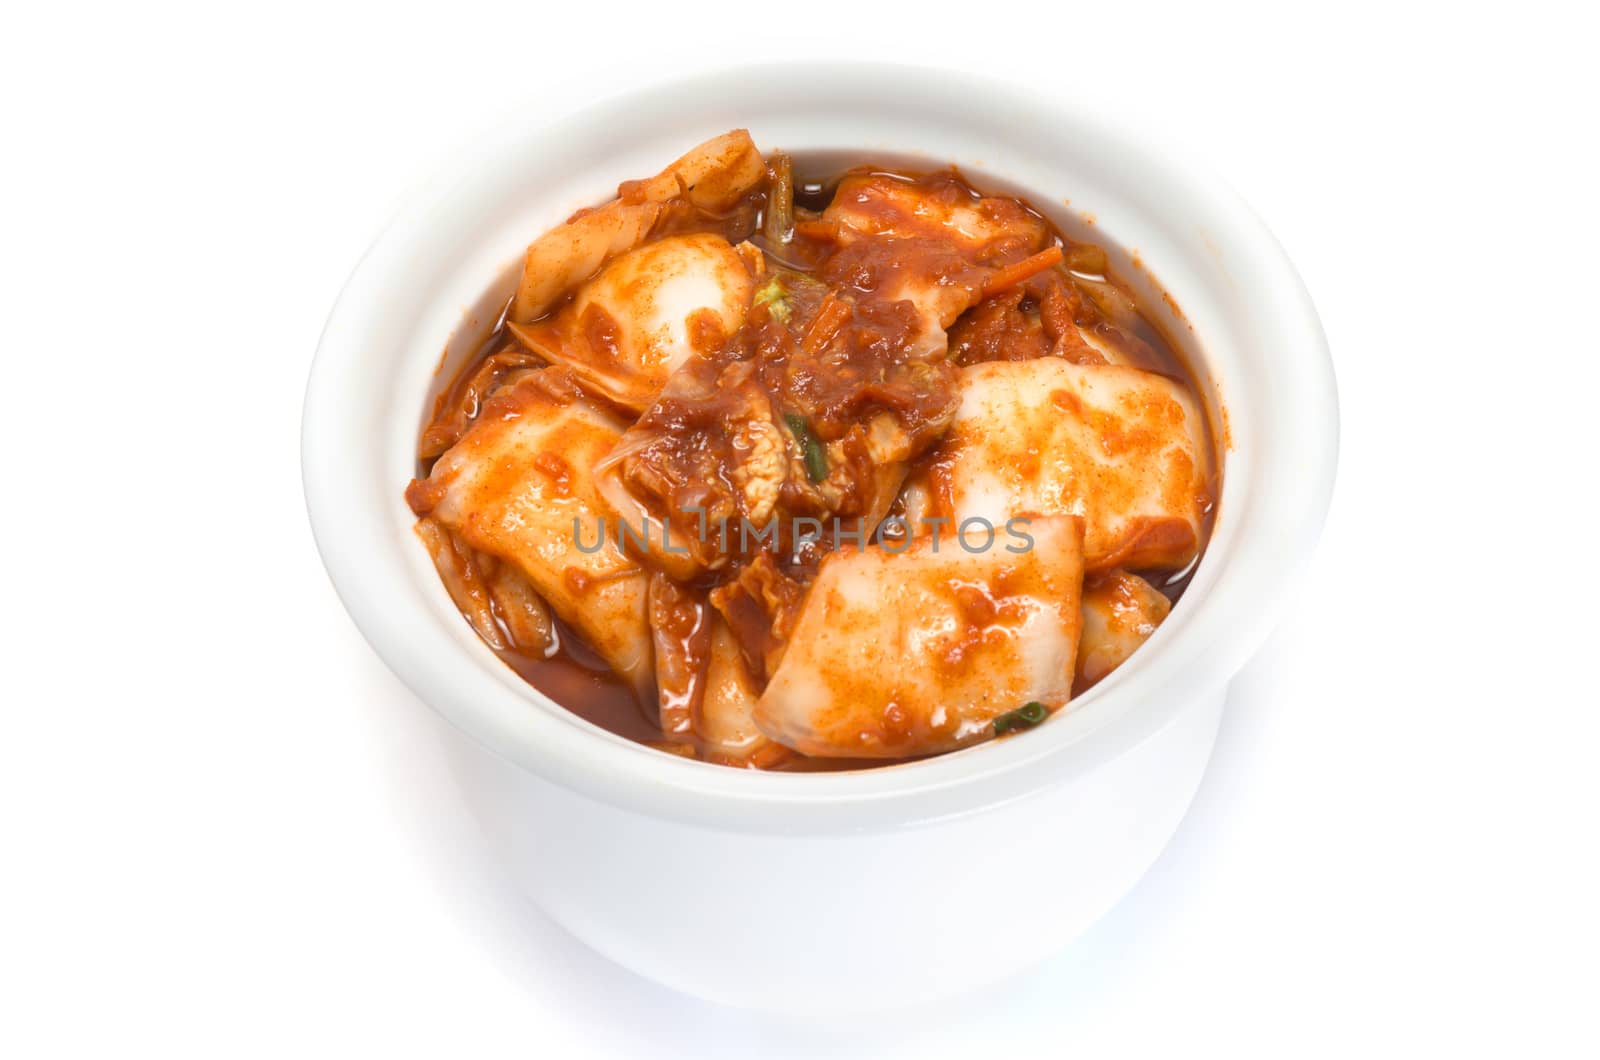 fermented food Kimchi by daoleduc